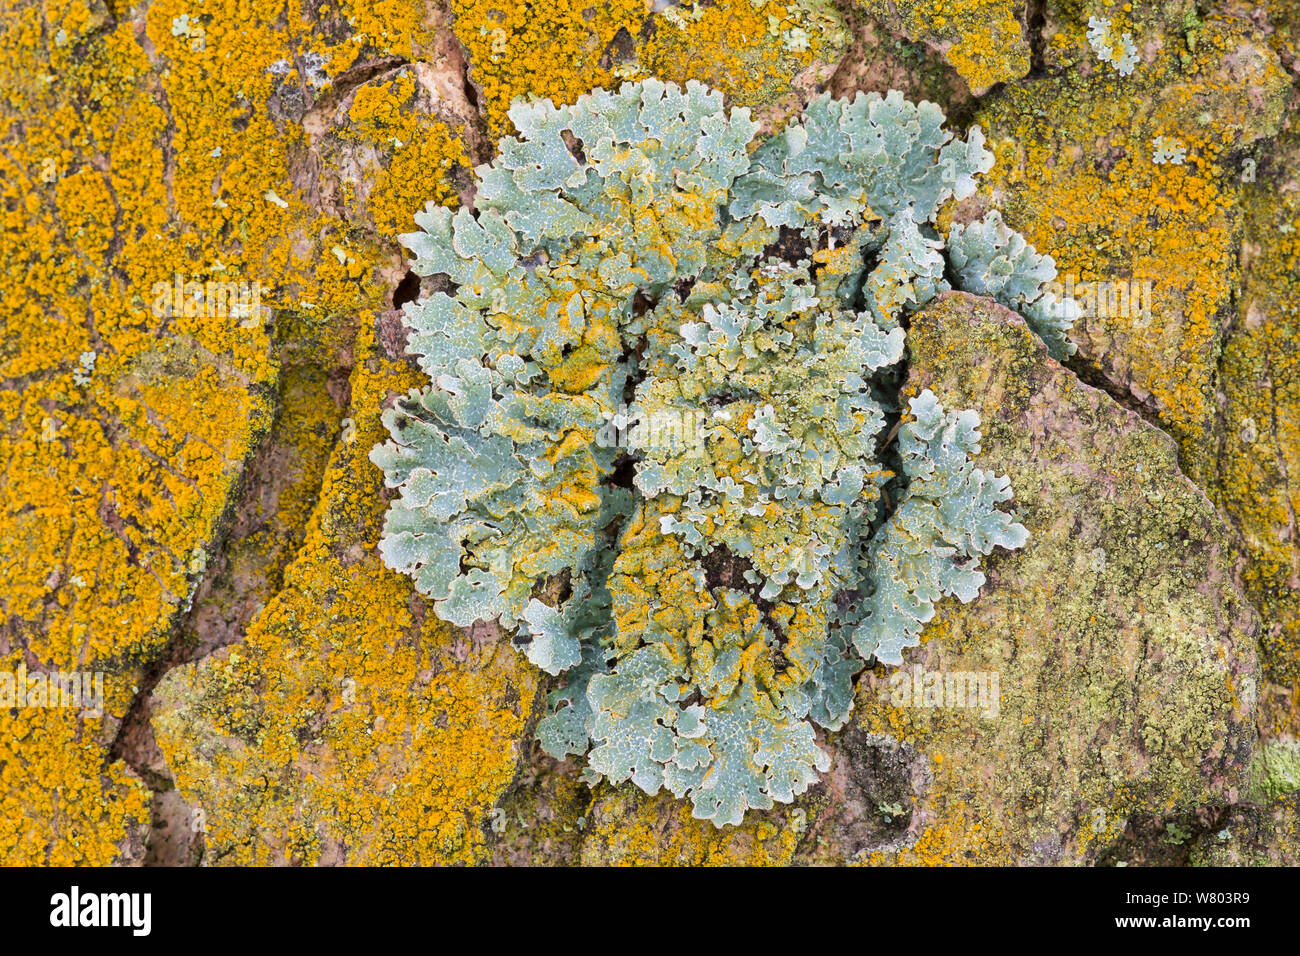 Polvere d oro lichen (Chrysothrix candelaris) cresce attorno e sopra la protezione lichen (Clairmont sulcata) sulla corteccia di platano, Padley boschi, Derbyshire, England, Regno Unito, dicembre. Foto Stock